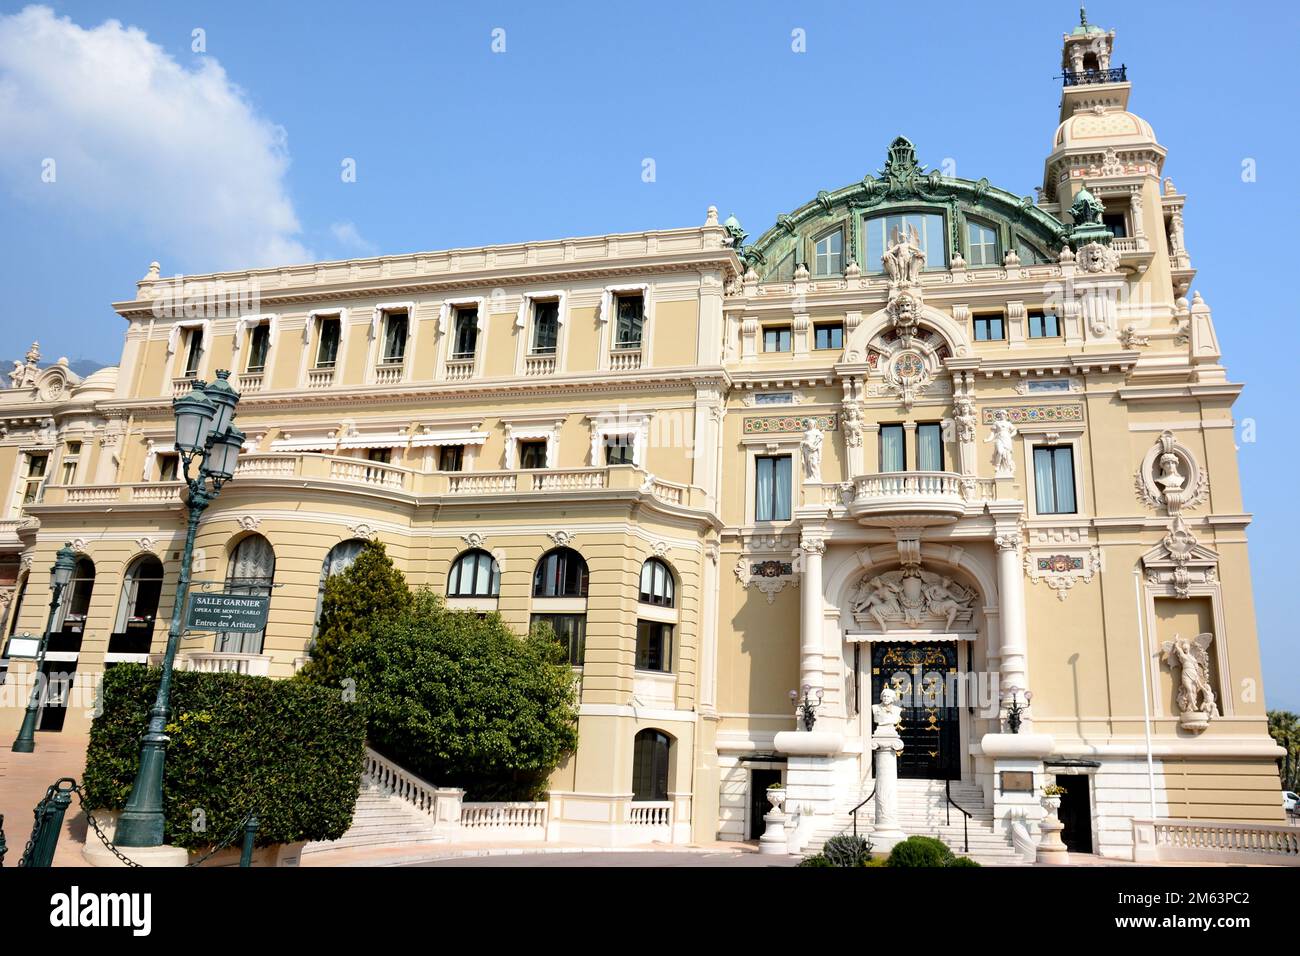 La principauté de Monaco est un état in dépendant dirigé par le Prince Albert II. L'opéra de Monte Carlo a été conçu par Charles Garnier. Stock Photo